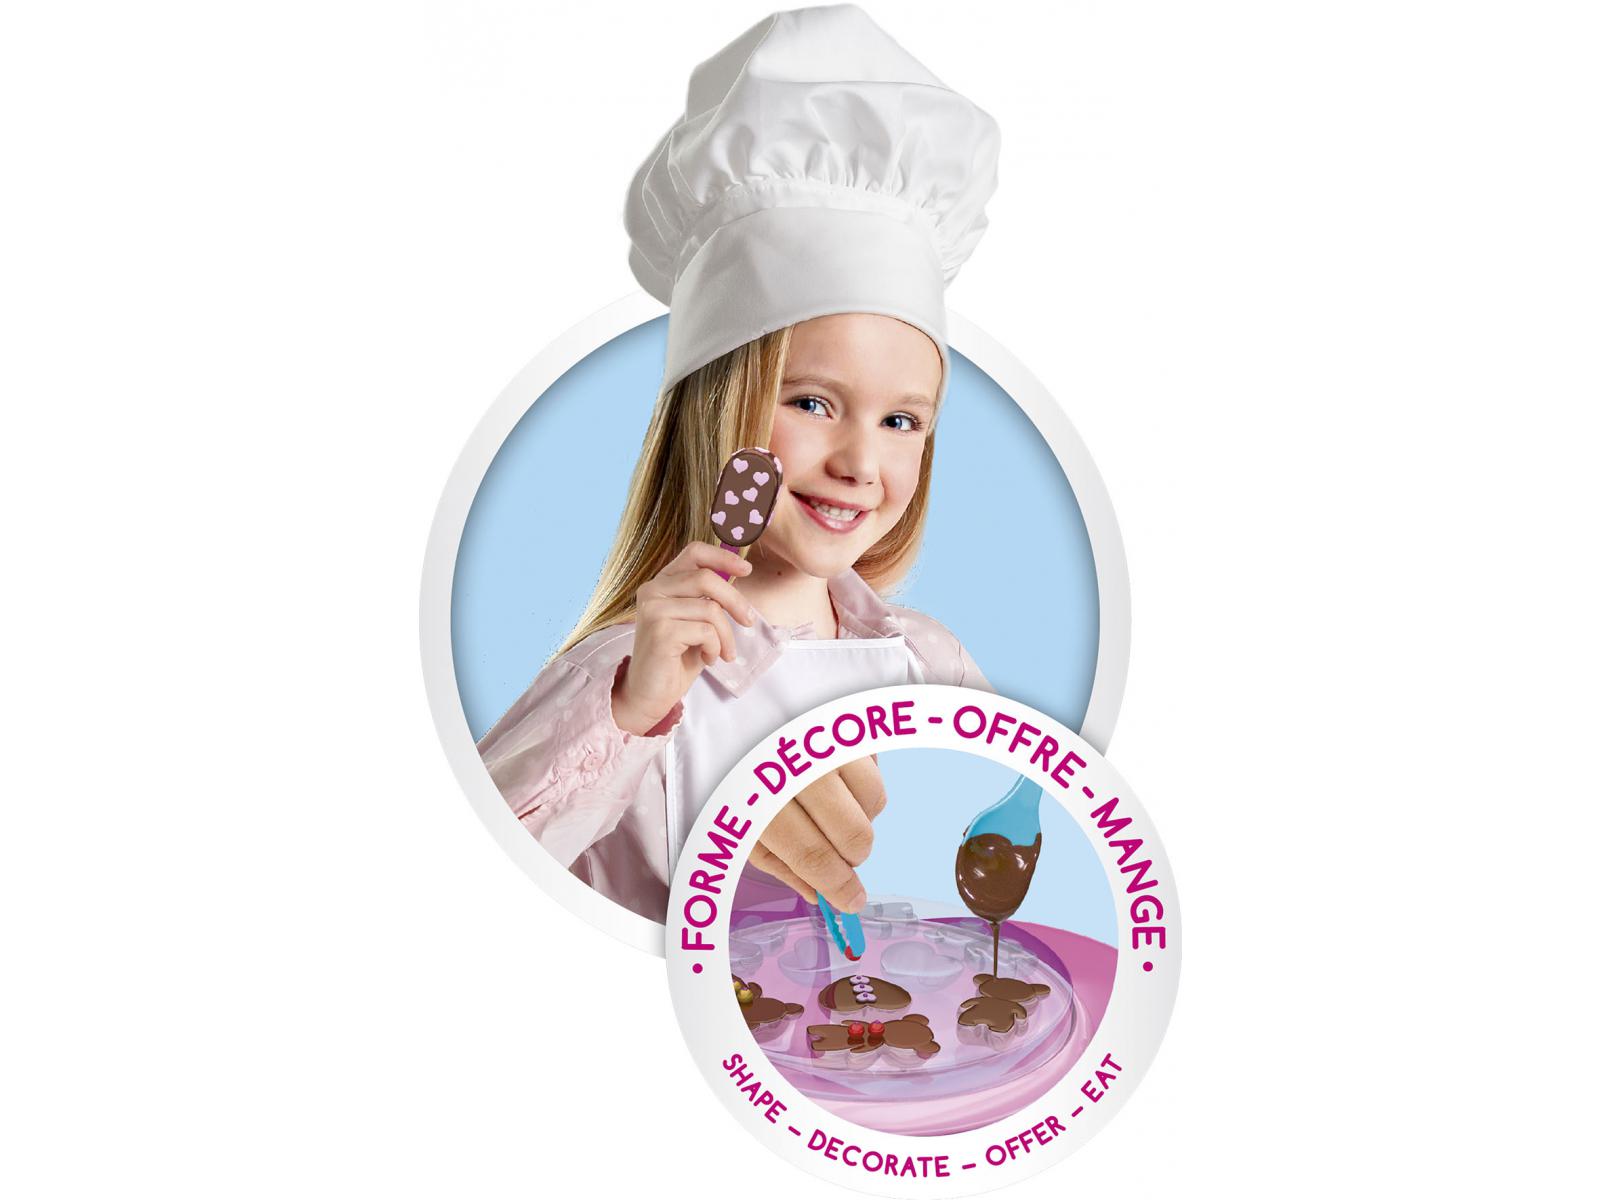 LANSAY Mini délices Jeu de cuisine Mon super atelier Chocolat 5 en 1 - Fille  - a partir de 6 ans